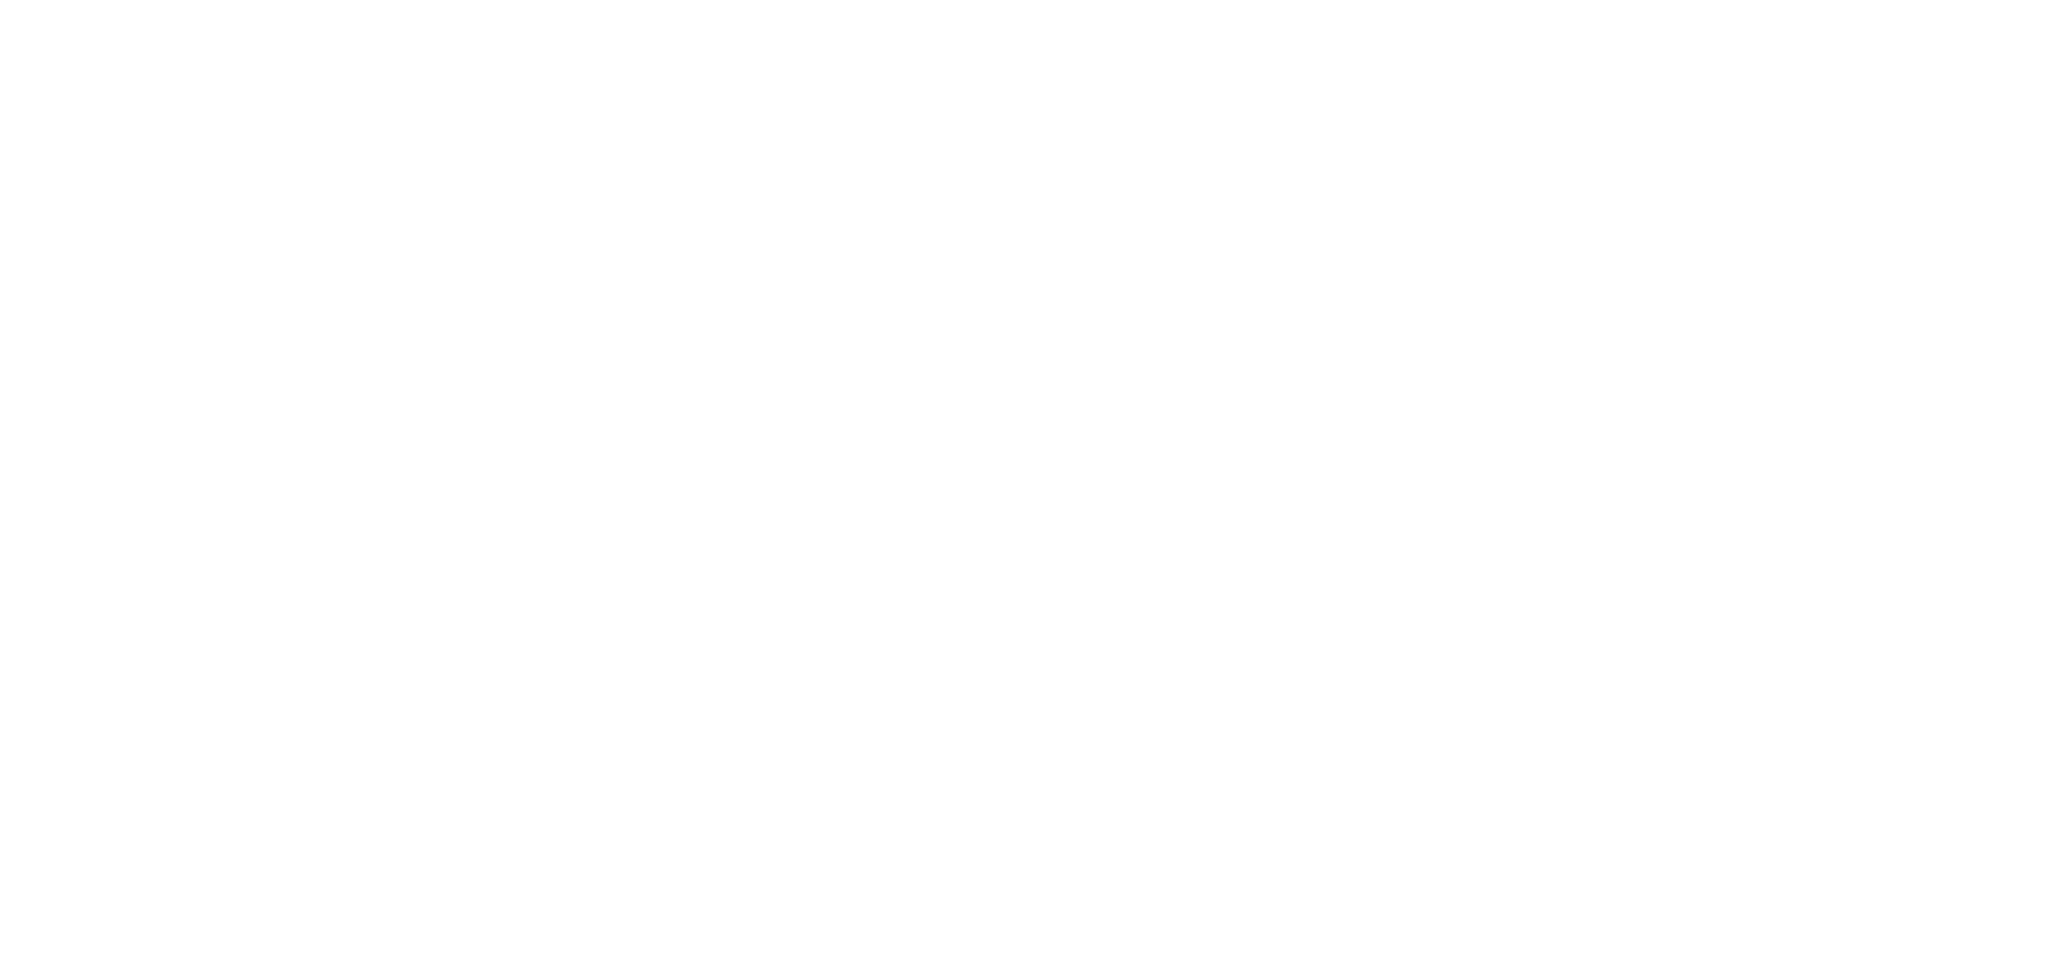 Guiz Bar Tools